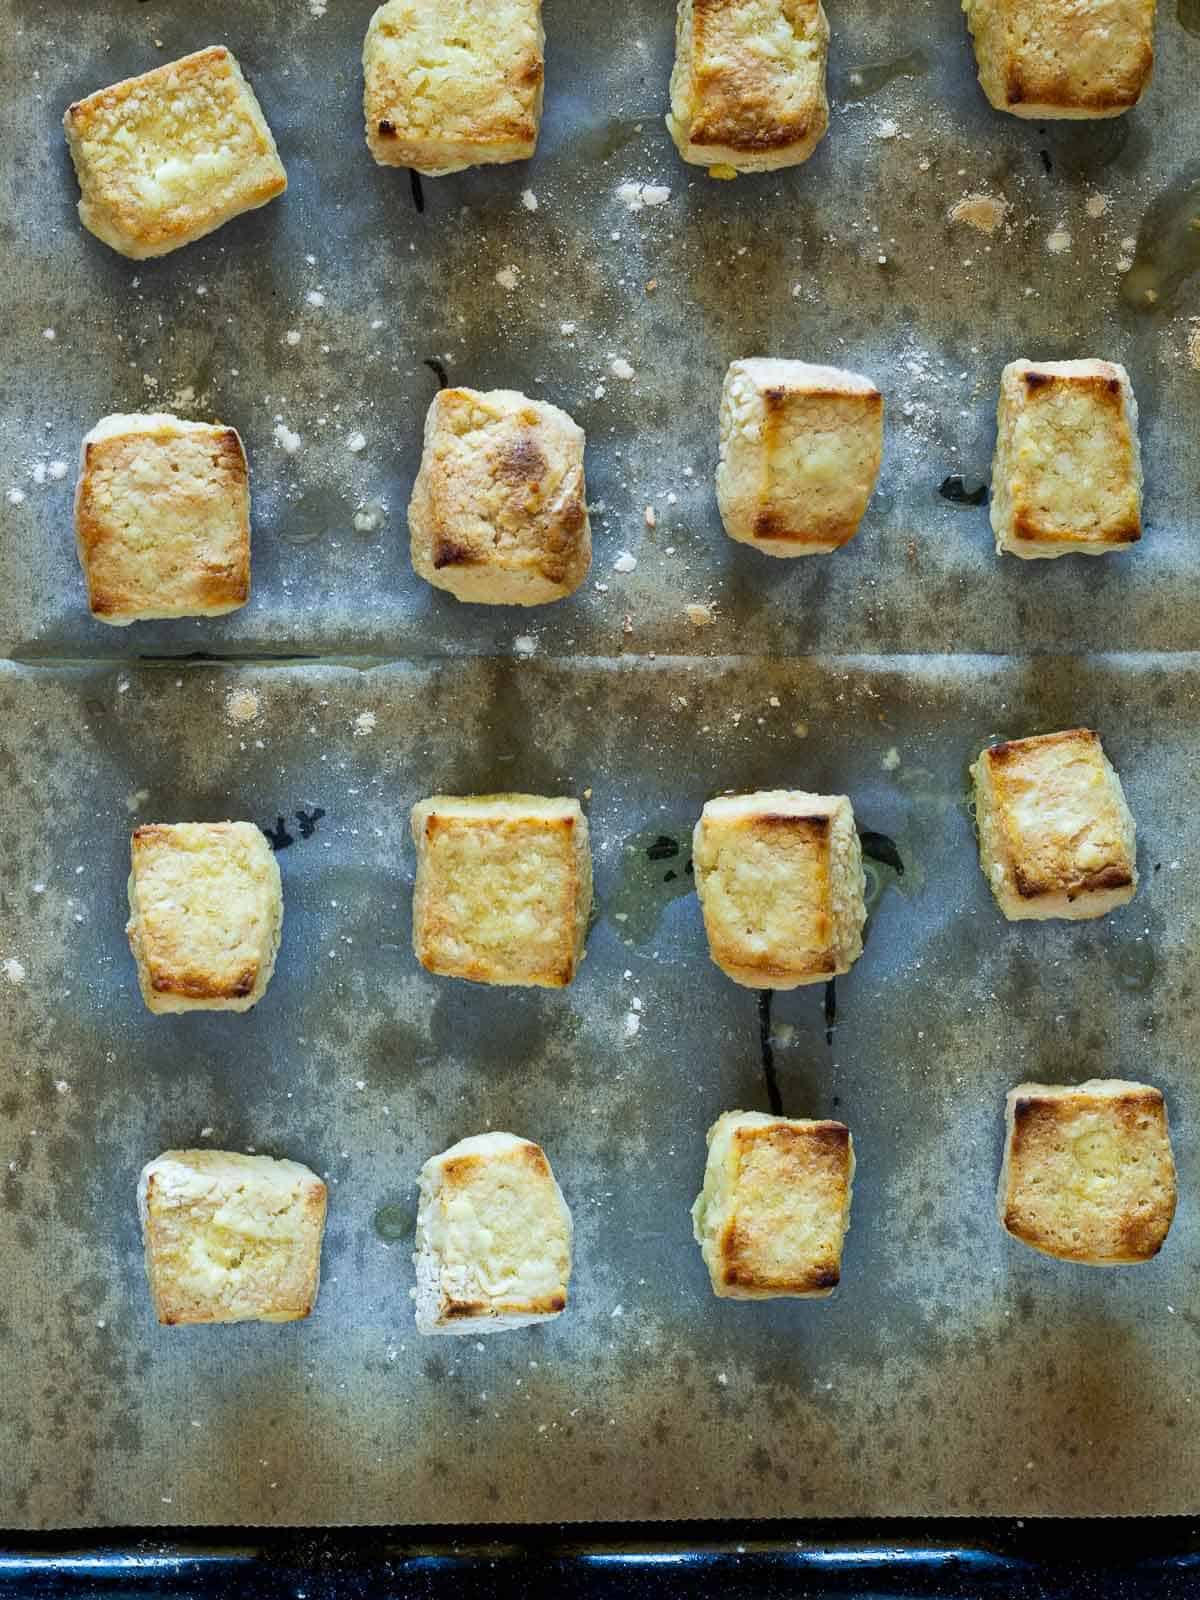 cubos de tofu dorados salidos del horno.